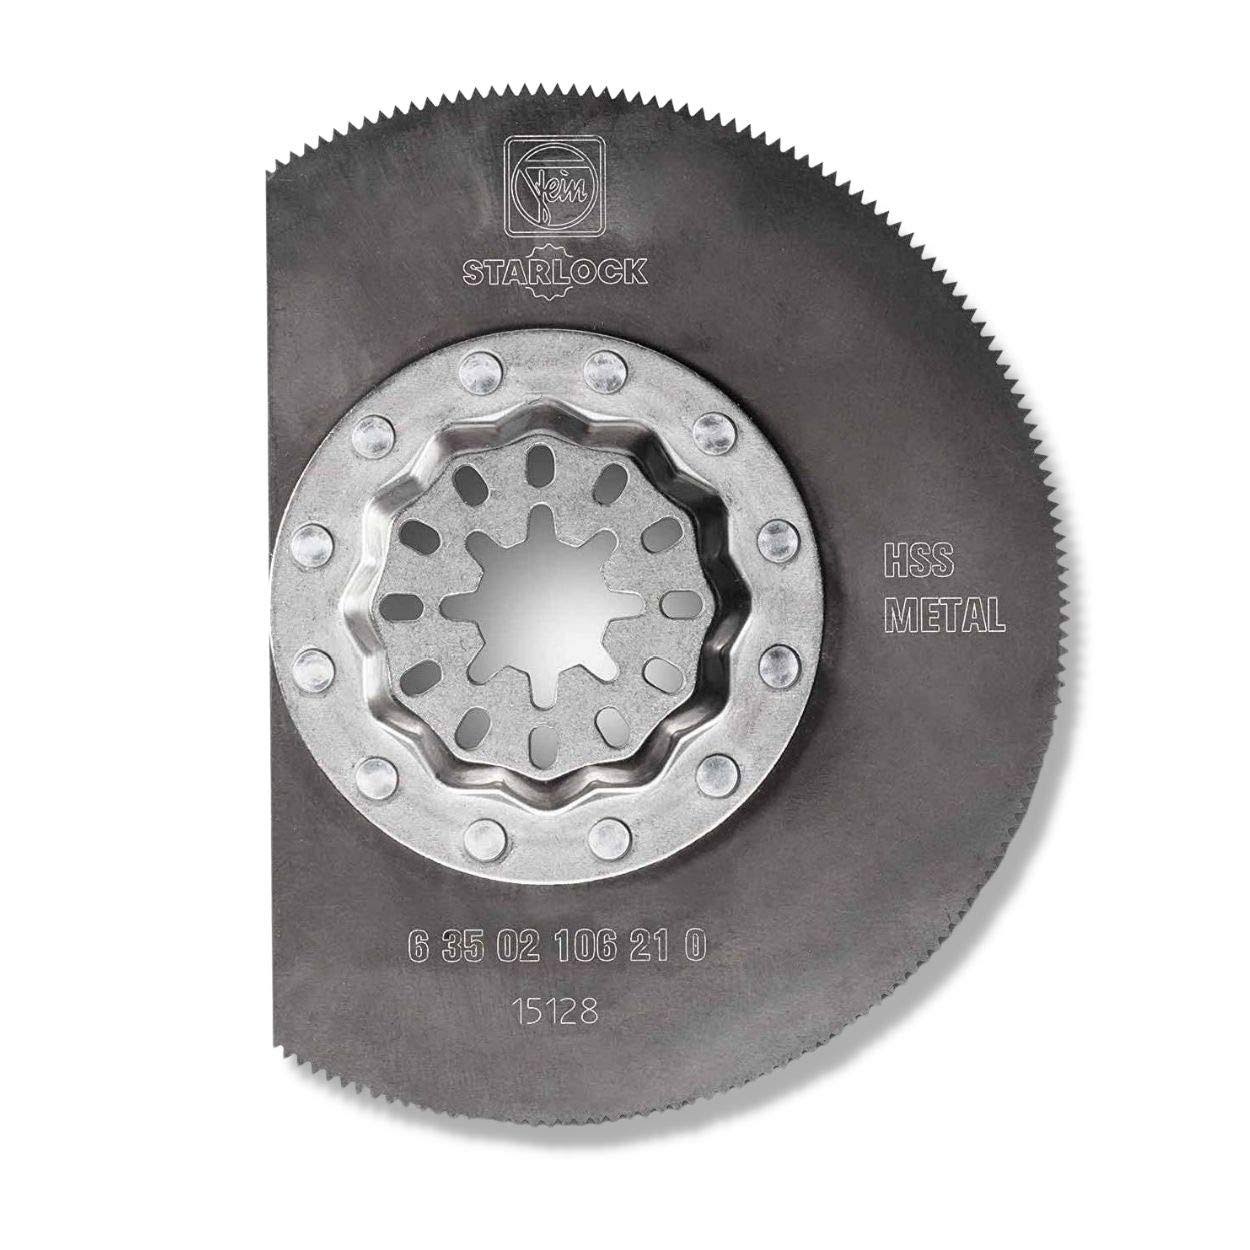 Fein 63502106220 HSS Circular Saw Blade 85 mm 2 pc(s)